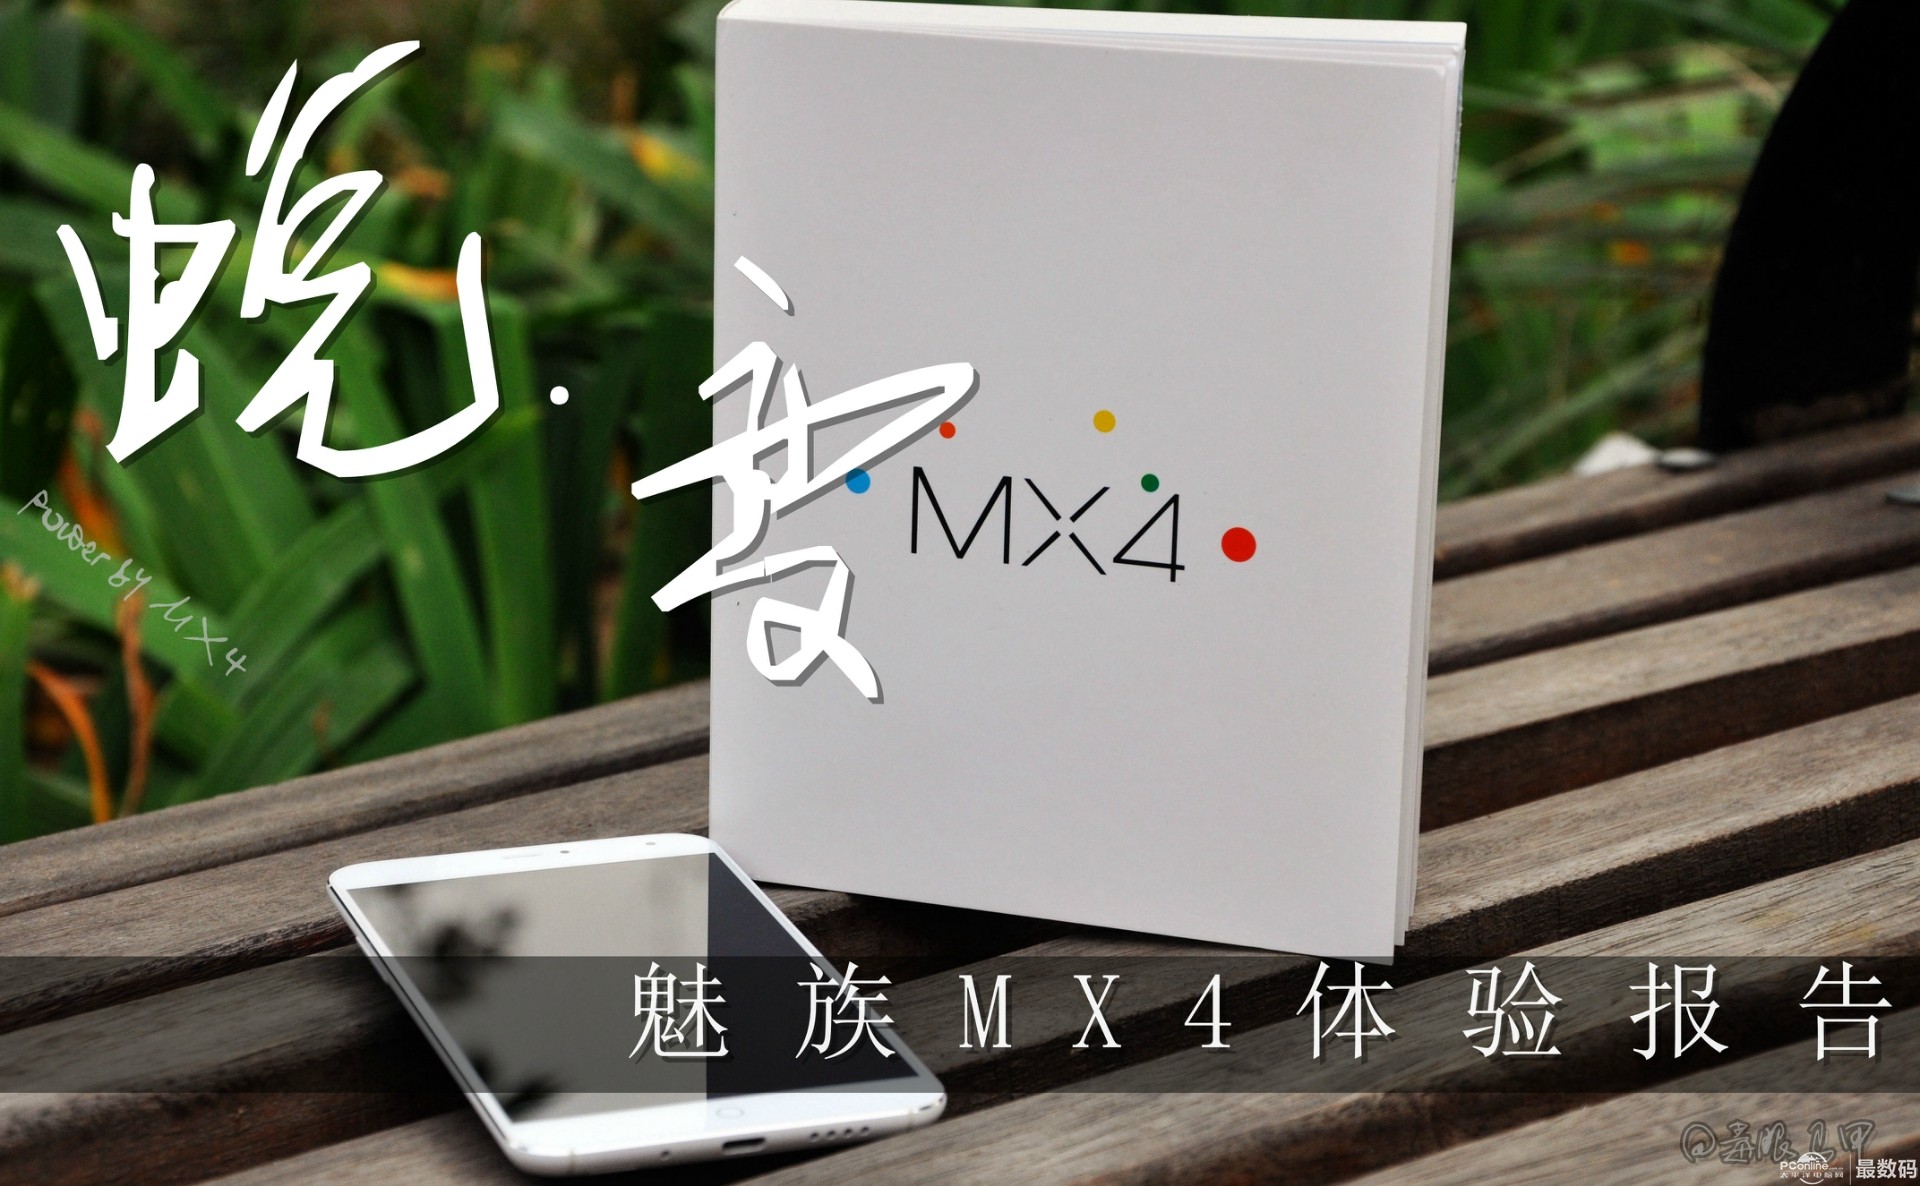 白色版魅族MX4 Pro开箱图文评测 | 极客32